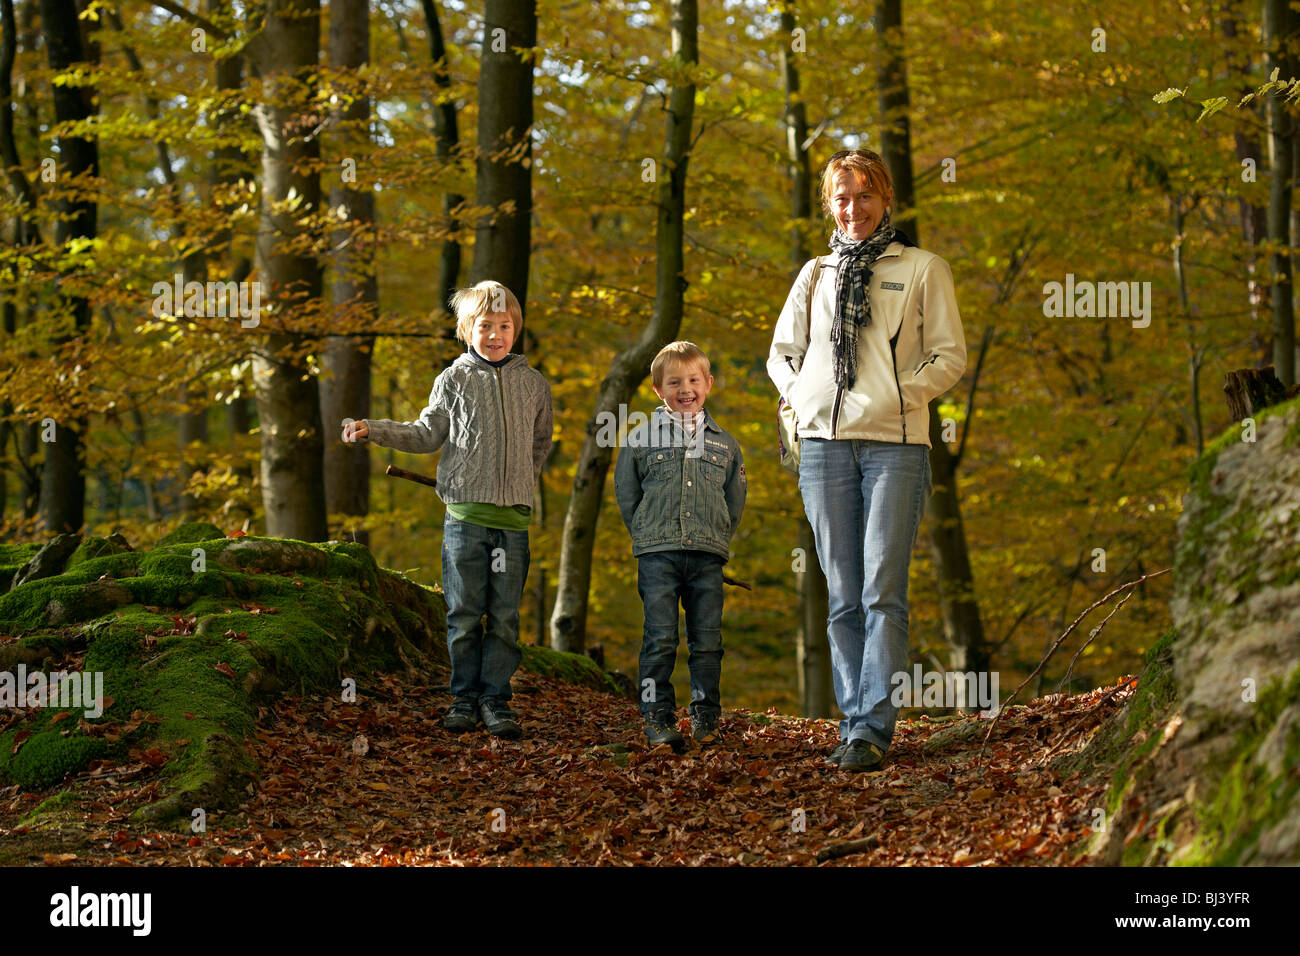 Woman with children in the forest, St. Margarethen, Reifnitz, Pyramidenkogel mountain, Carinthia, Austria, Europe Stock Photo